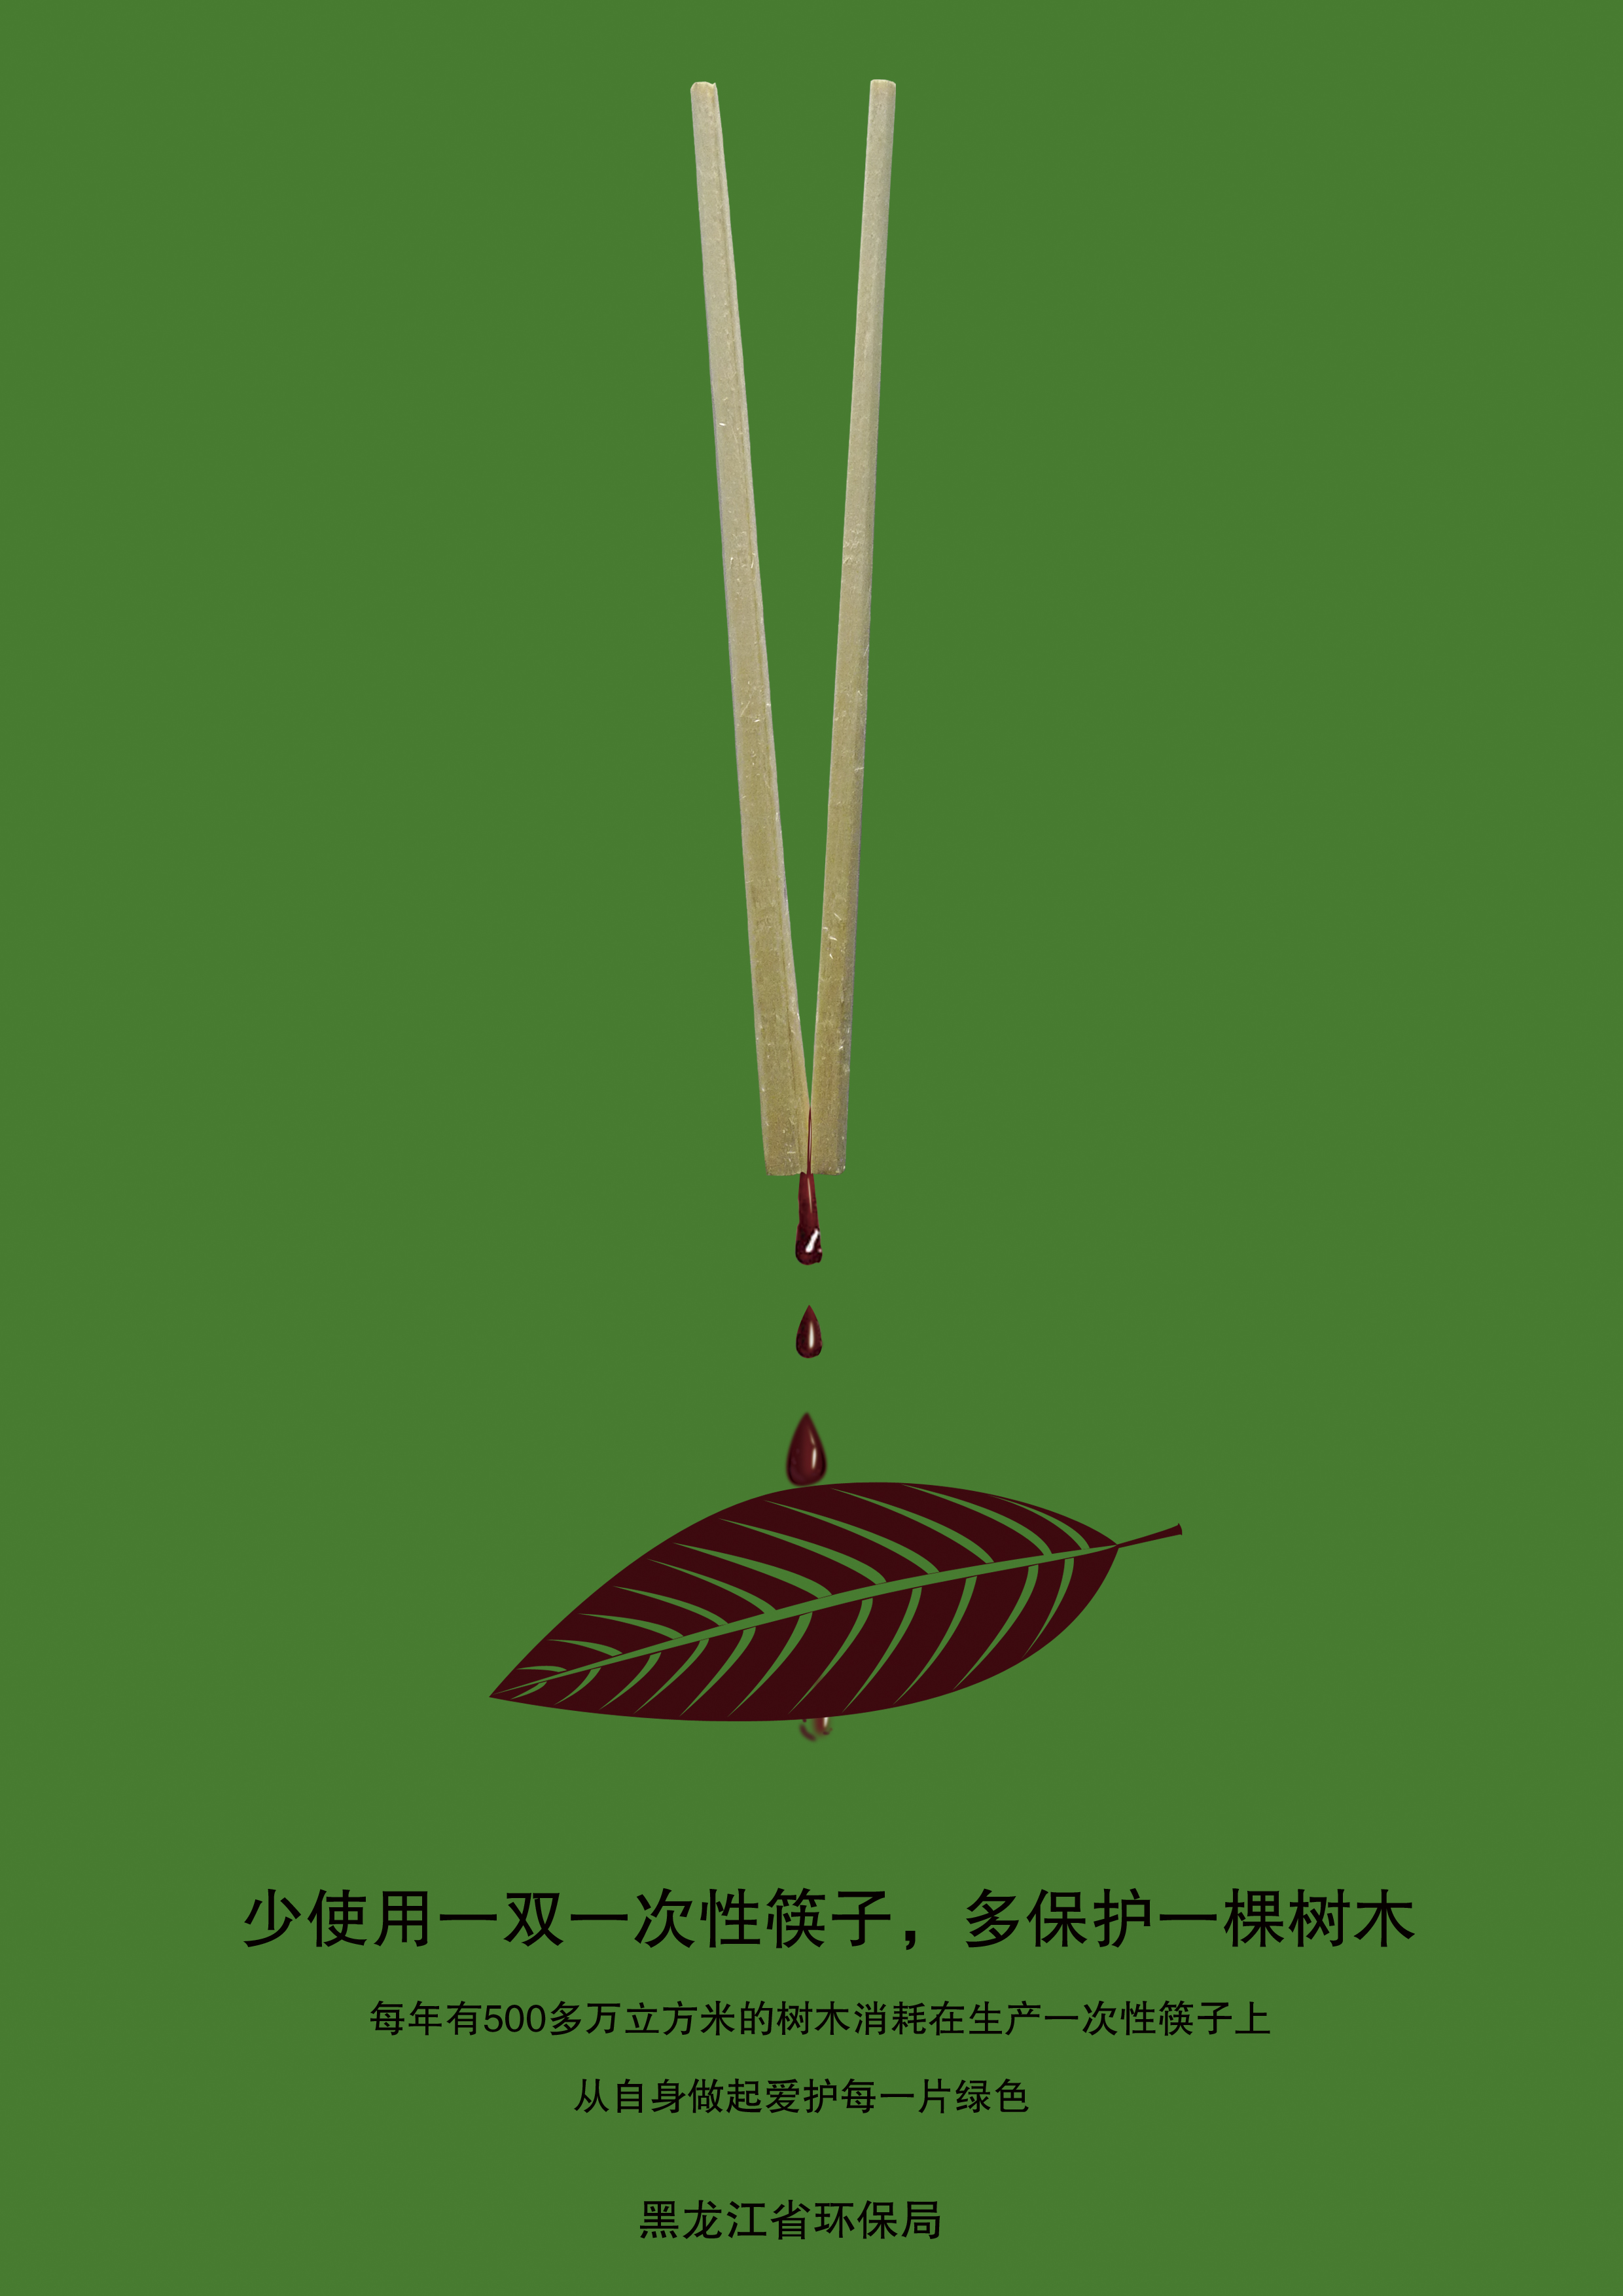 保护森林 筷子 RGB.jpg